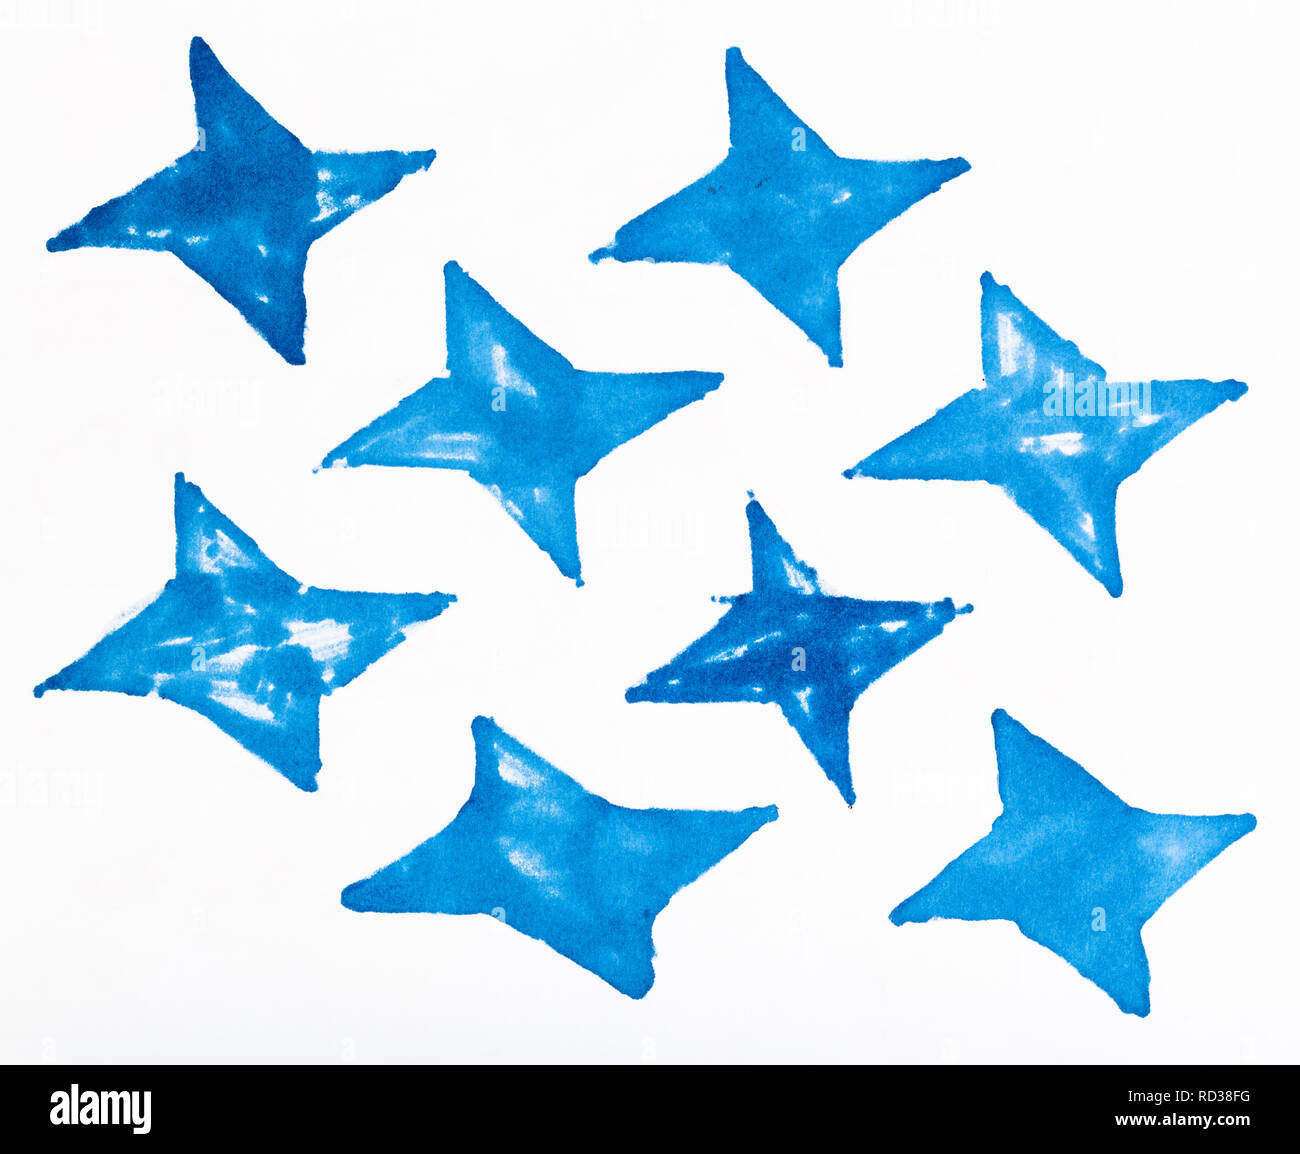 Abstrakte handgezeichnete Muster auf weißem Papier durch die blauen Filzstift - einfache Ornament aus vier-spitz geformten Sterne Stockfoto